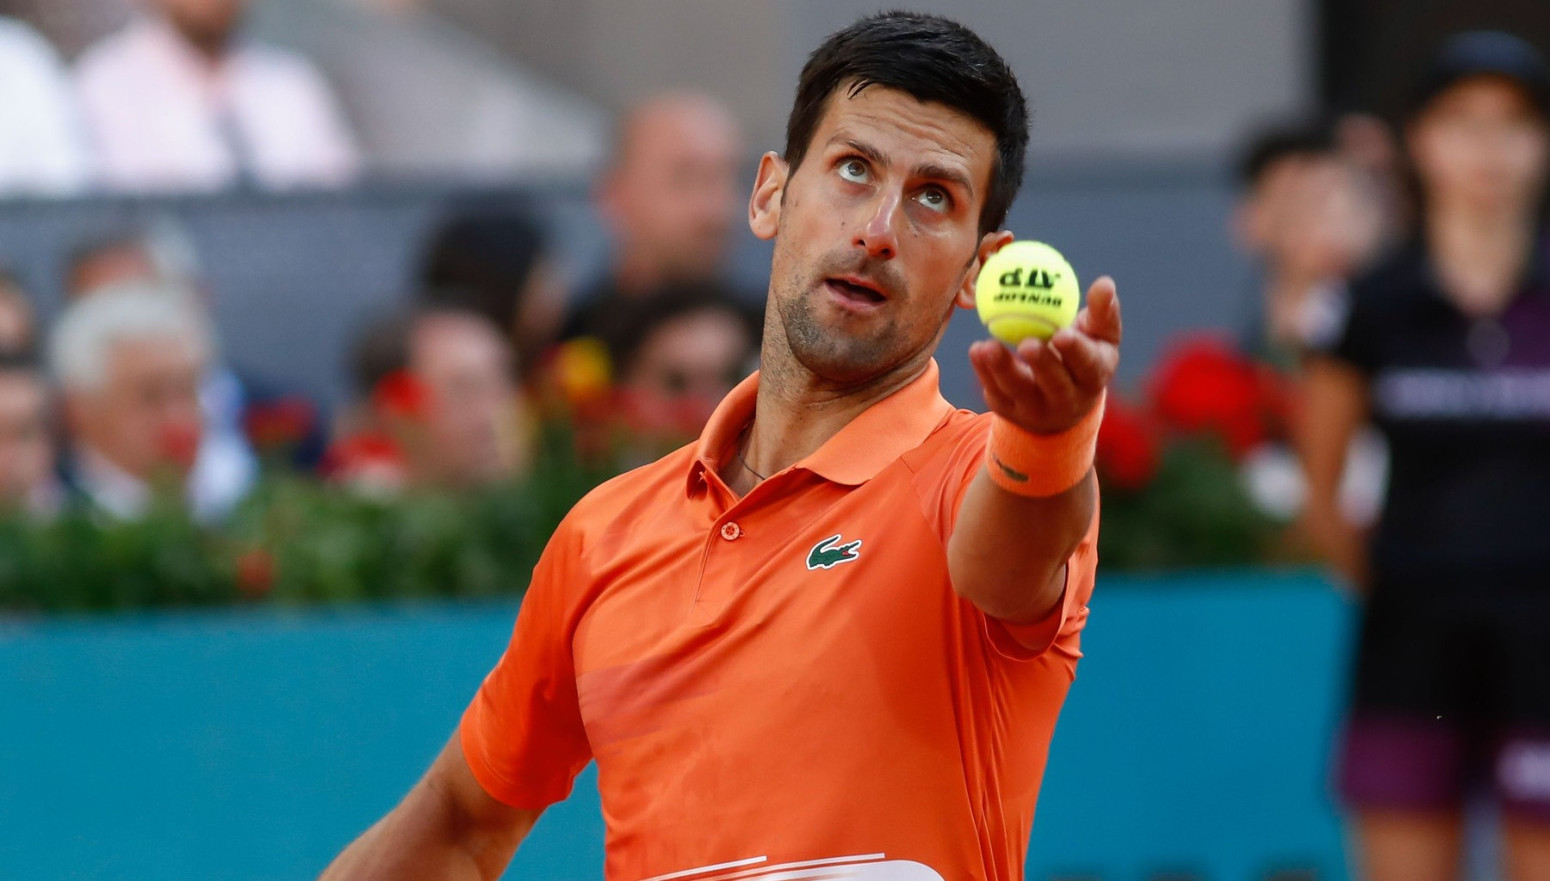 Stiže i Rafa, Novak u Madridu ima paklenu konkurenciju - Vesti - Tenis.sport